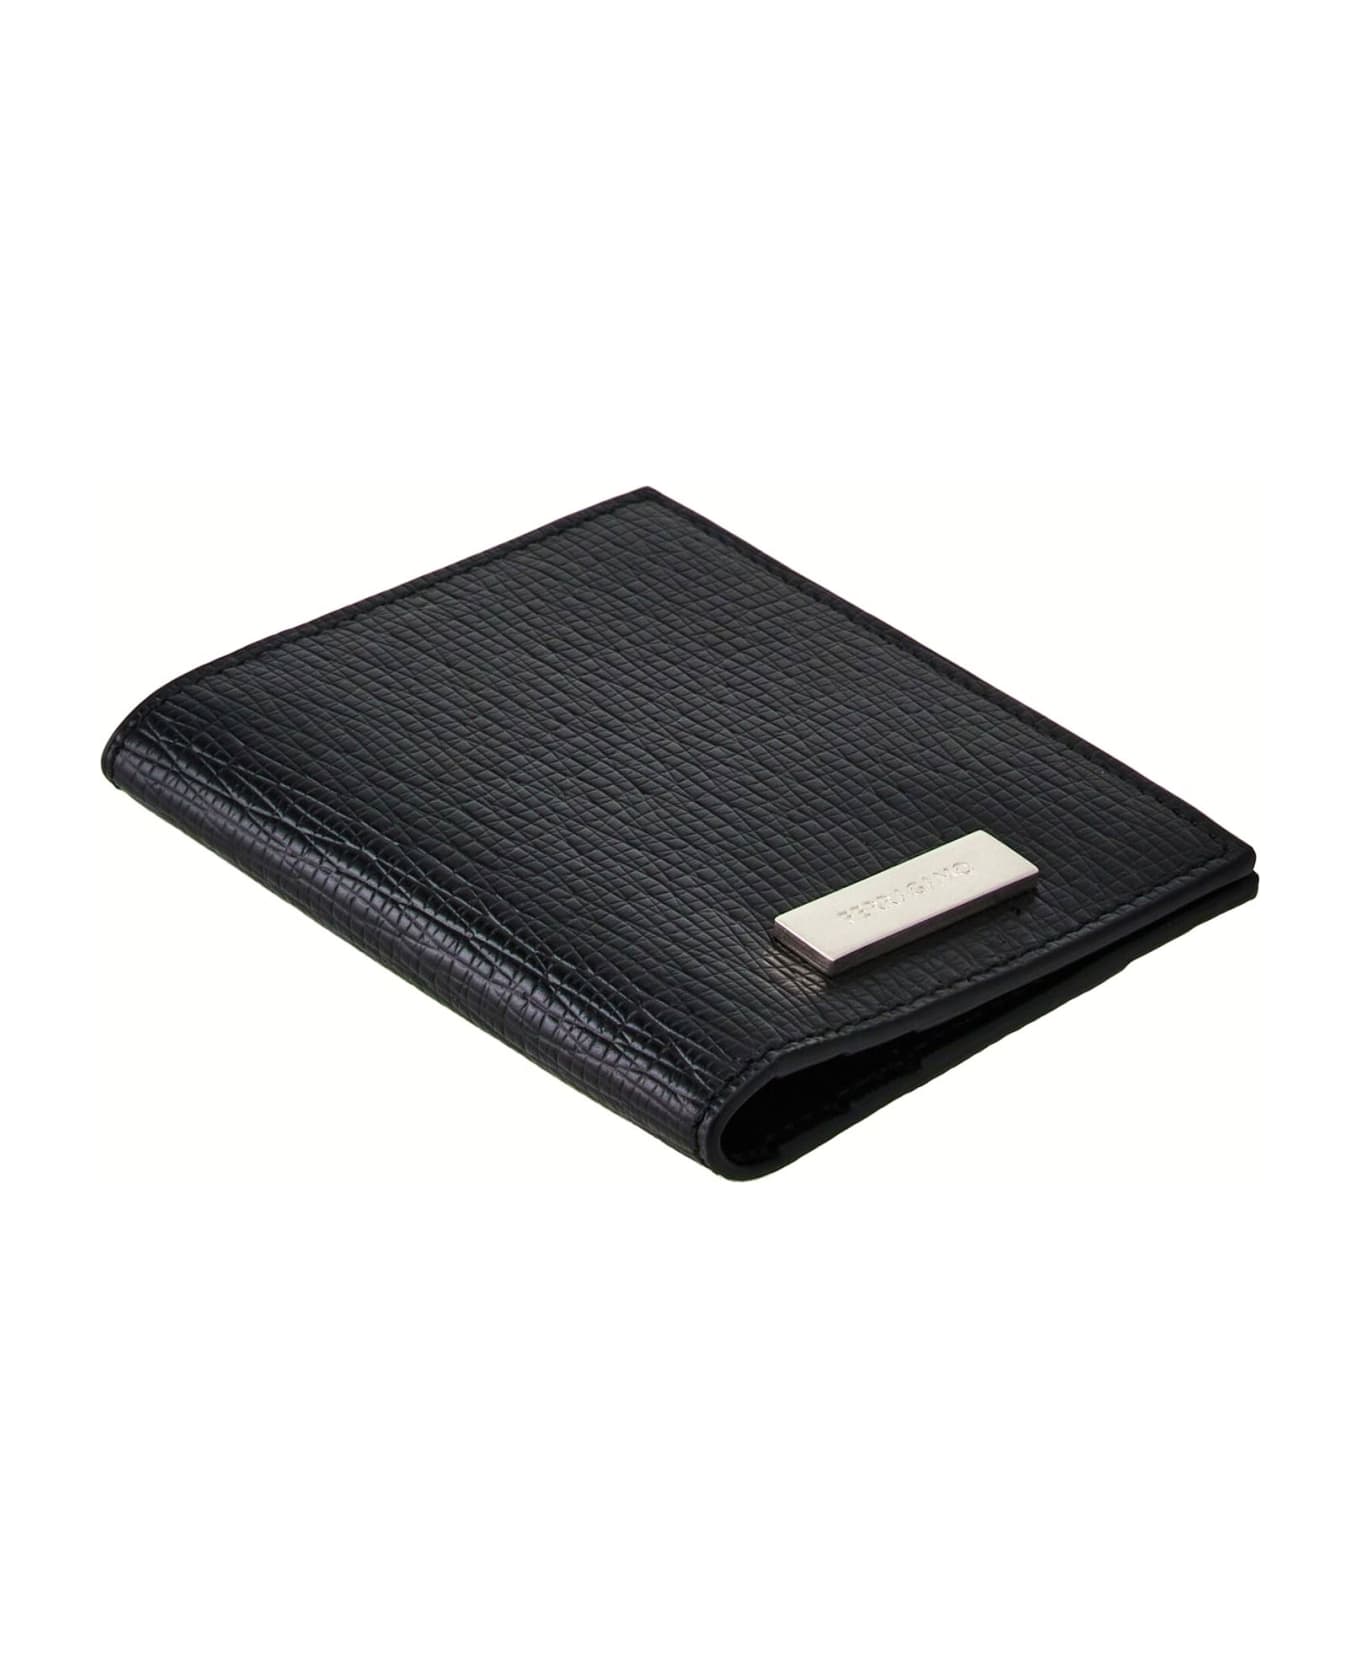 Ferragamo Hammered Calfskin Leather Card Holder - Black バッグ